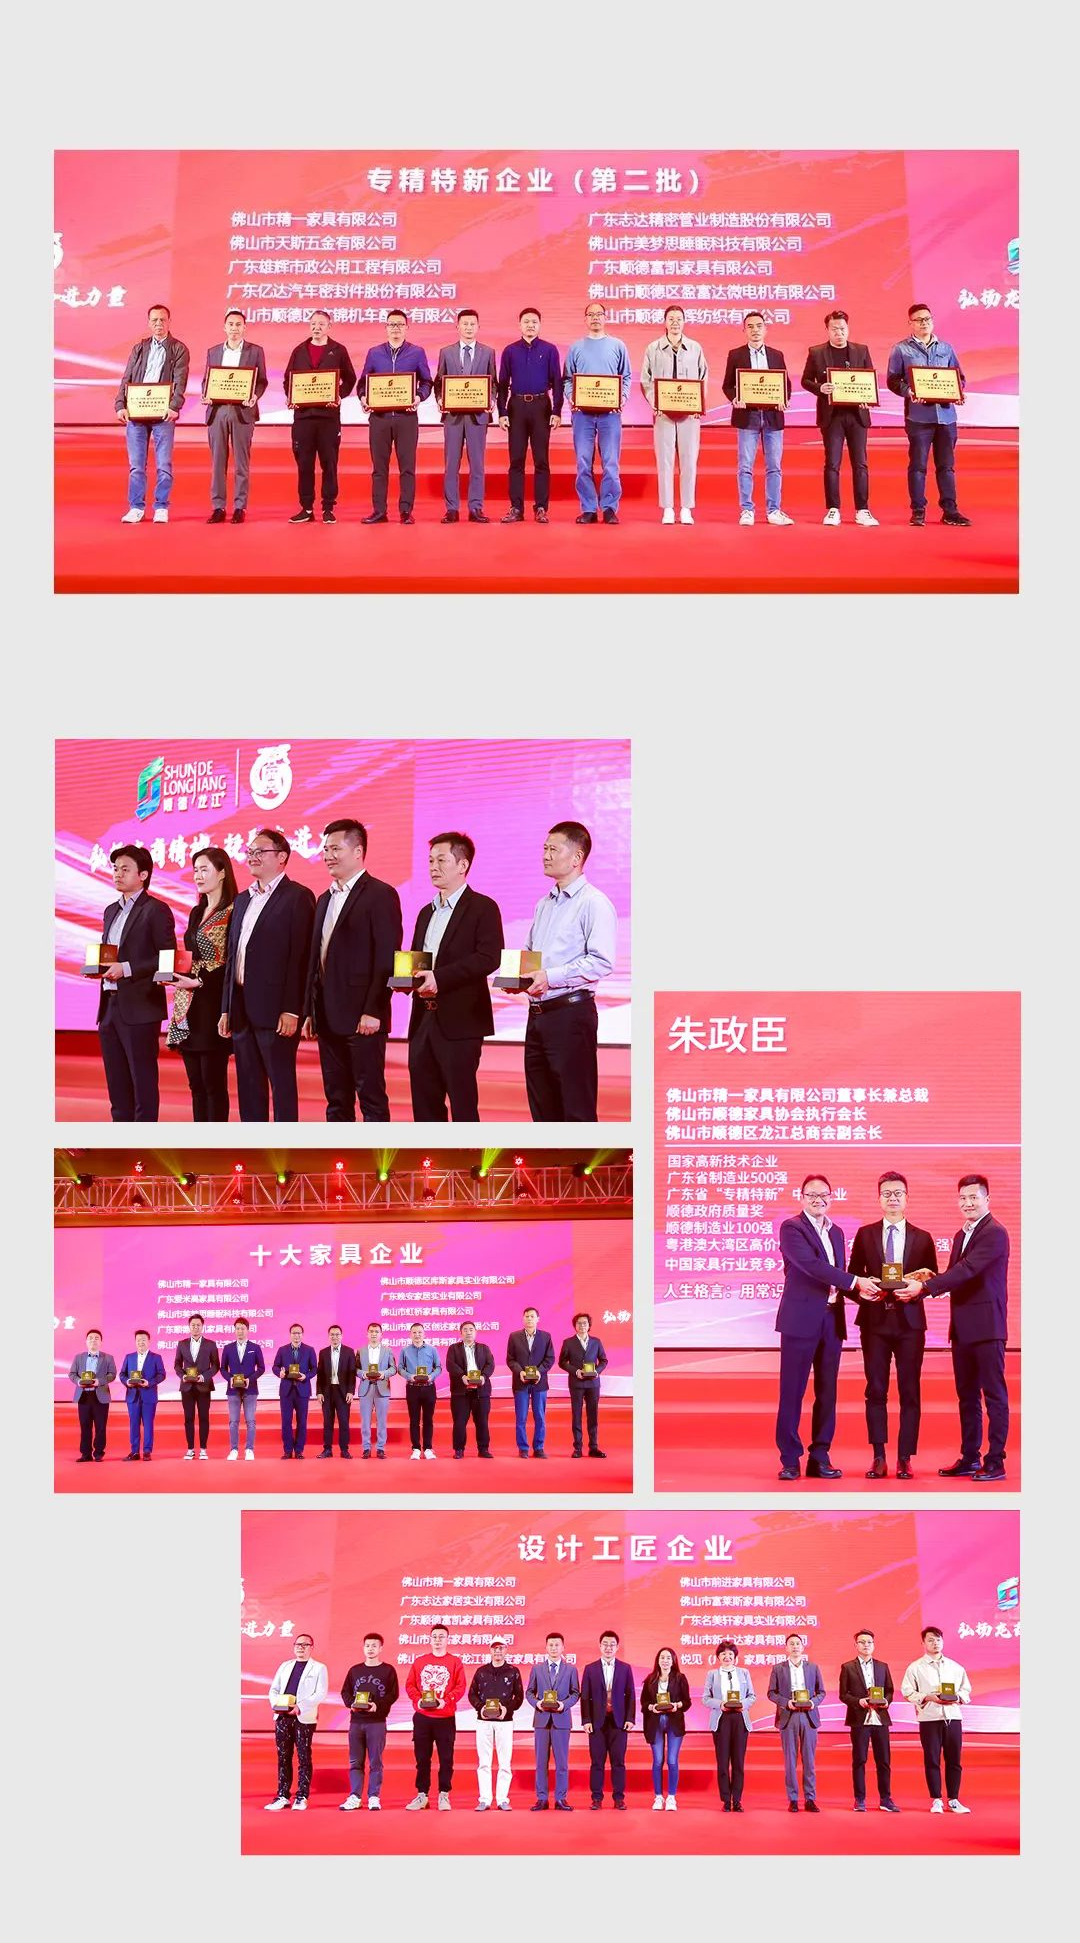 JE Group беше почестен со шест награди